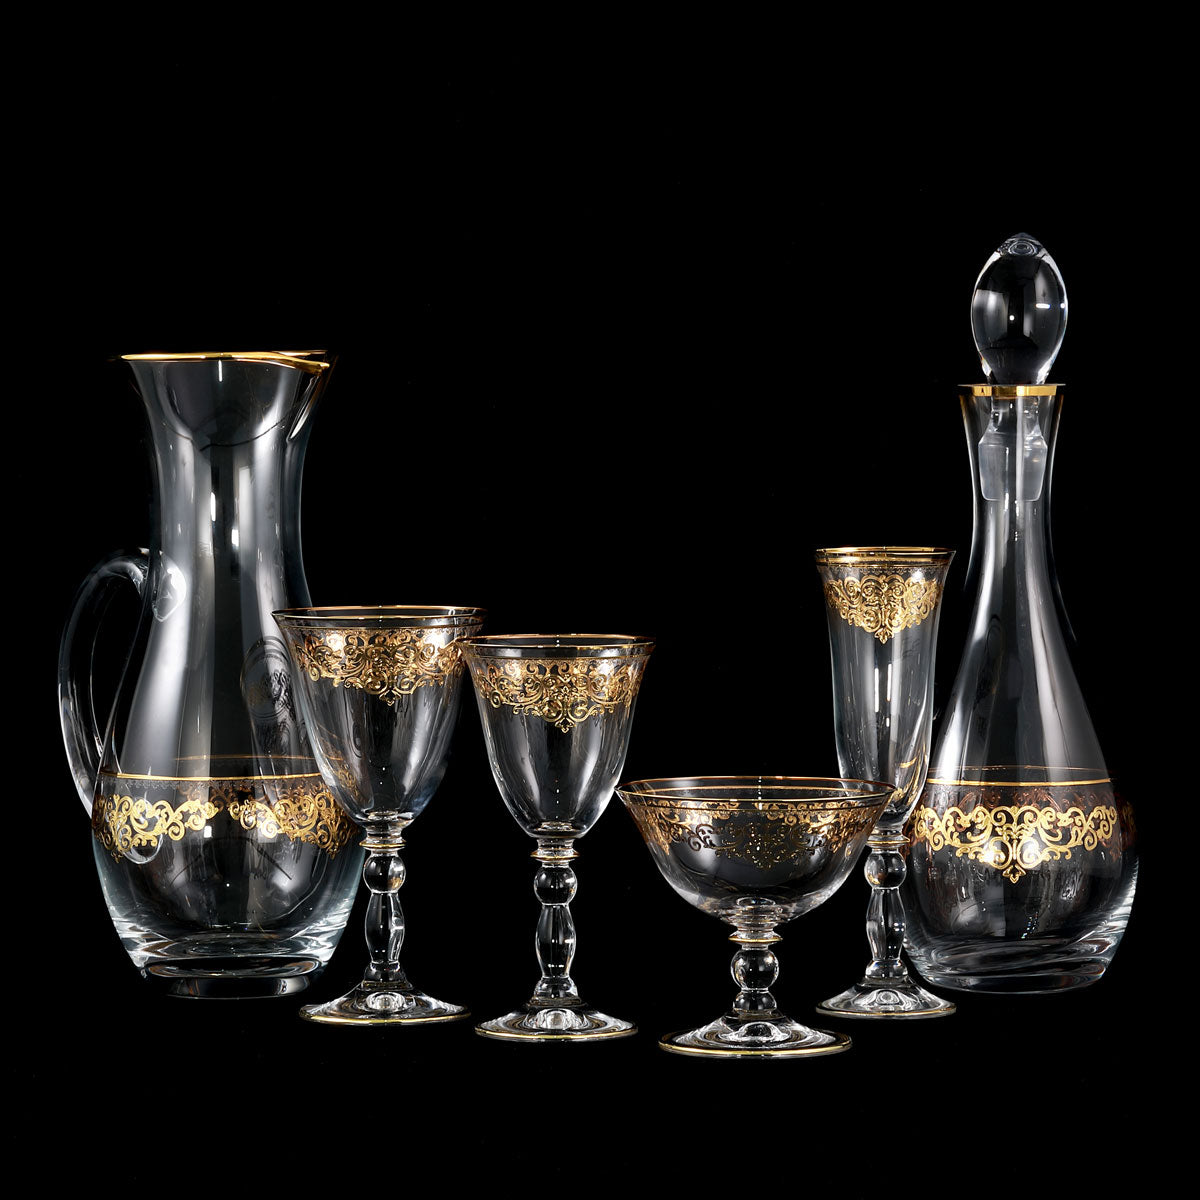 Servizio bicchieri classico con incisione e decorazione in Oro - Praga